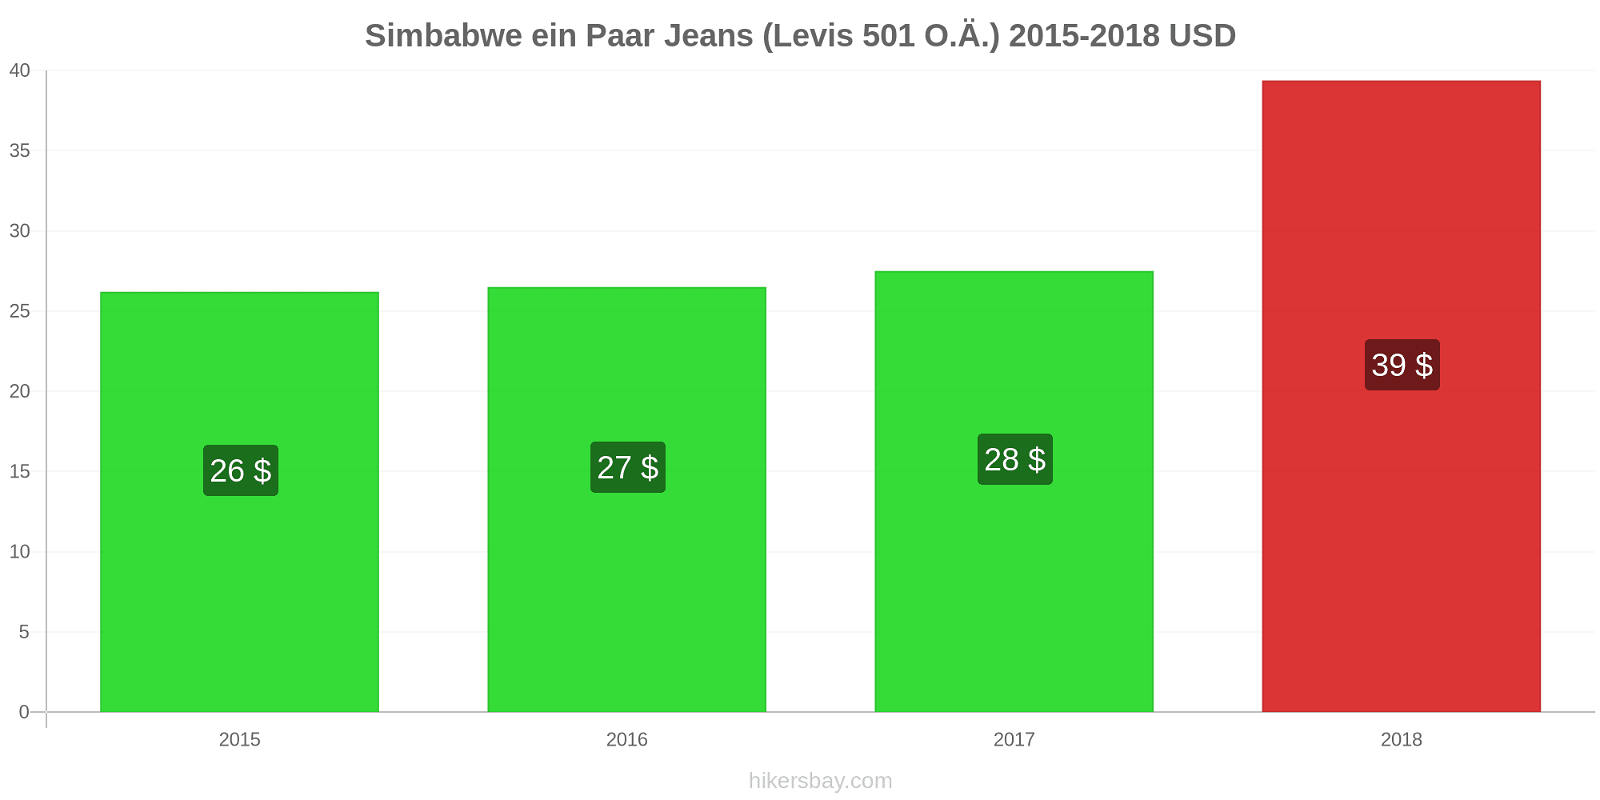 Simbabwe Preisänderungen 1 Paar Jeans (Levis 501 oder ähnlich) hikersbay.com